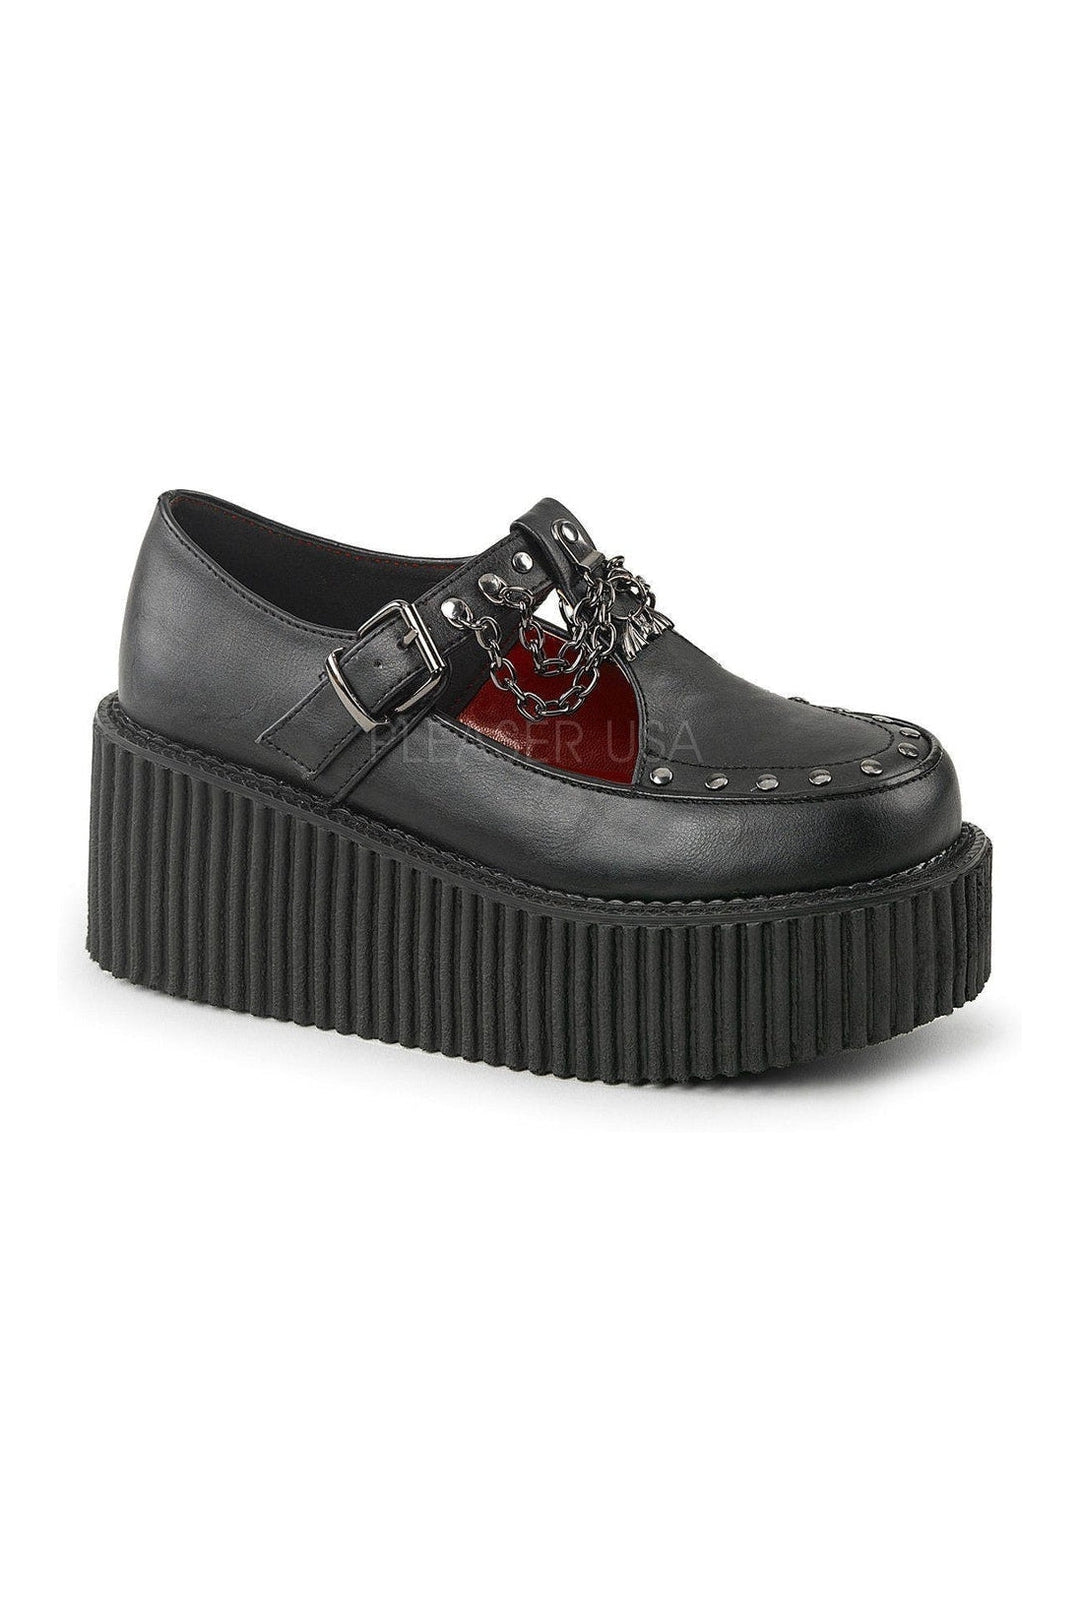 Demonia | CREEPER-215 Gothic Shoe | CRE215/BVL | online | SexyShoes.com – SEXYSHOES.COM